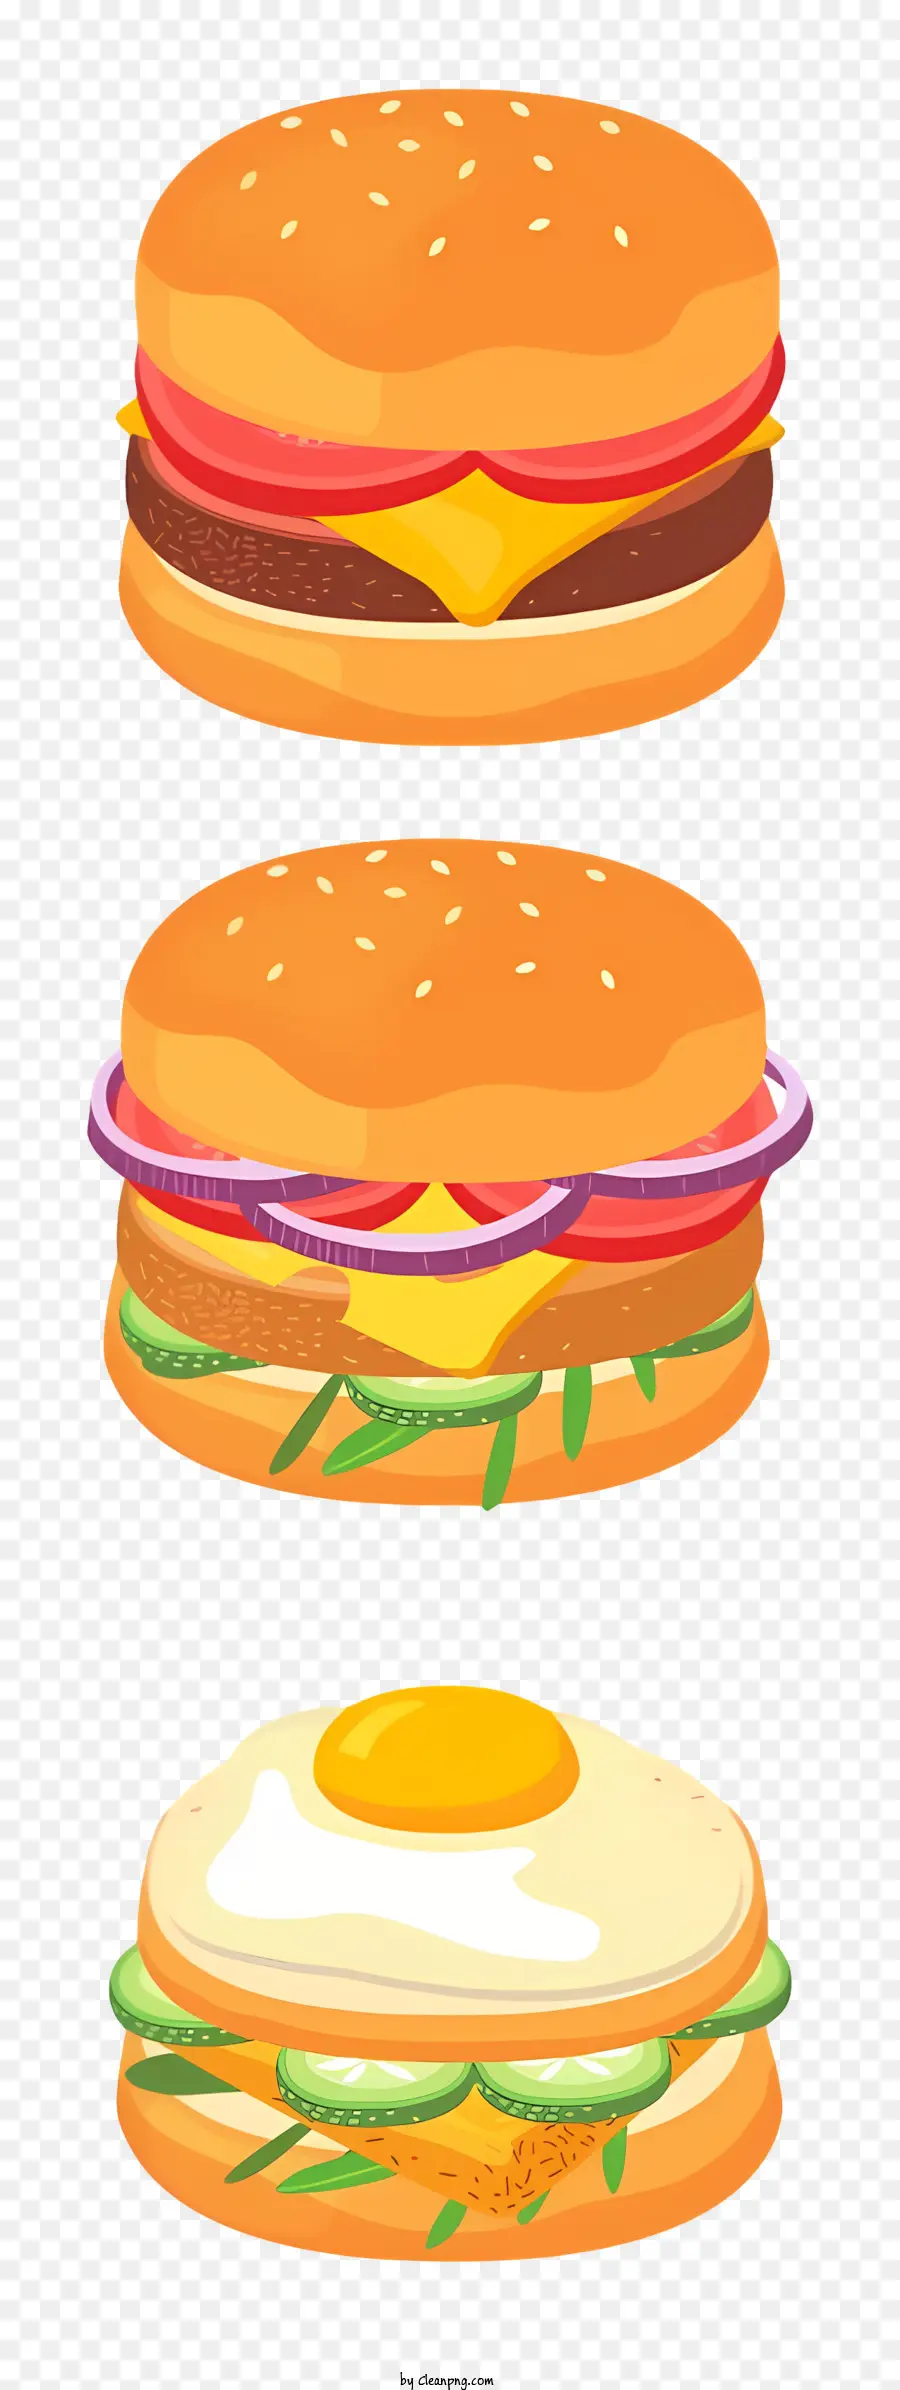 cà chua - Minh họa 3D của ba hamburger trên đĩa